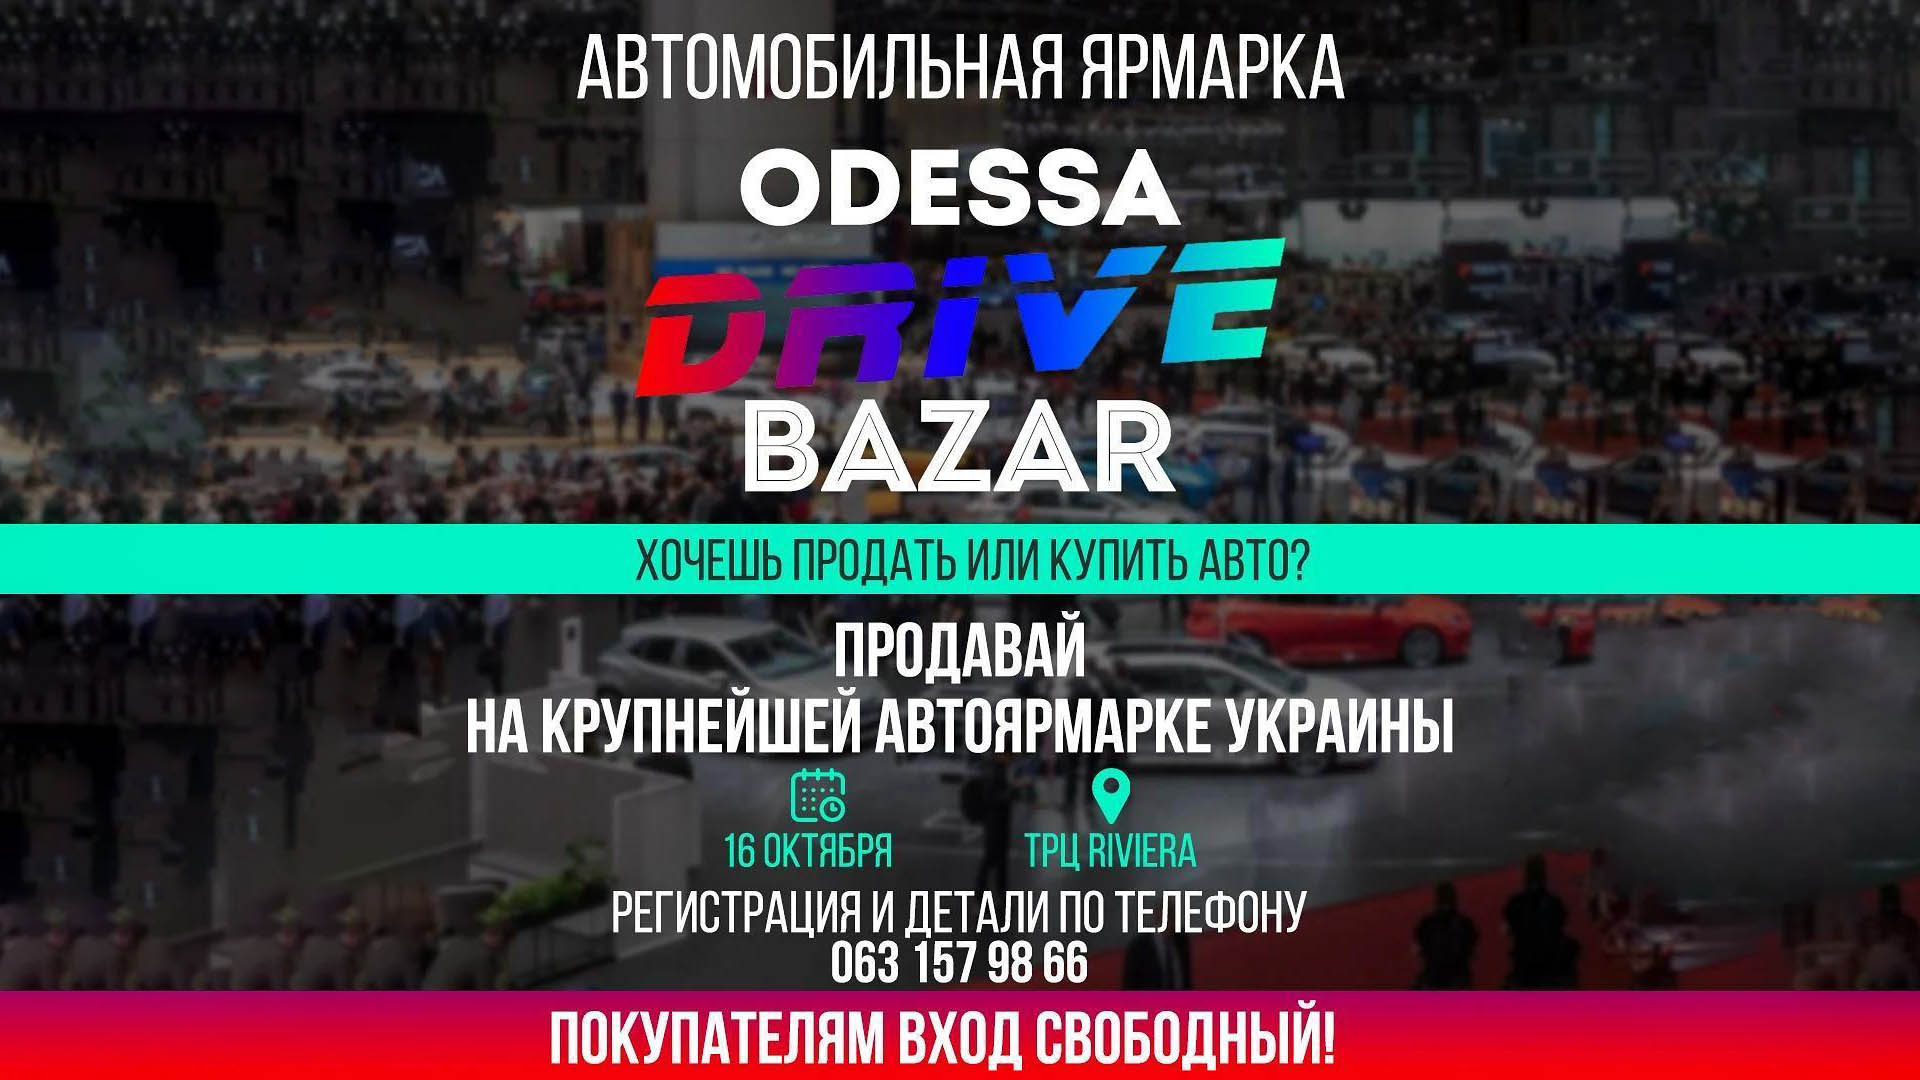 В Одессе пройдет выставка-ярмарка машин - "Odessa Drive Bazar"